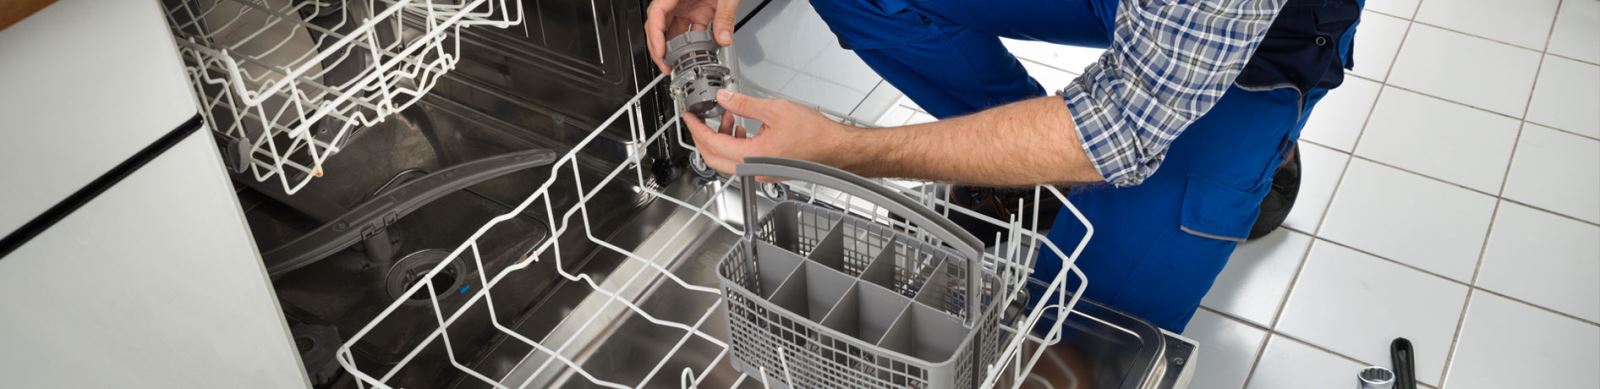 Repair Dishwashers